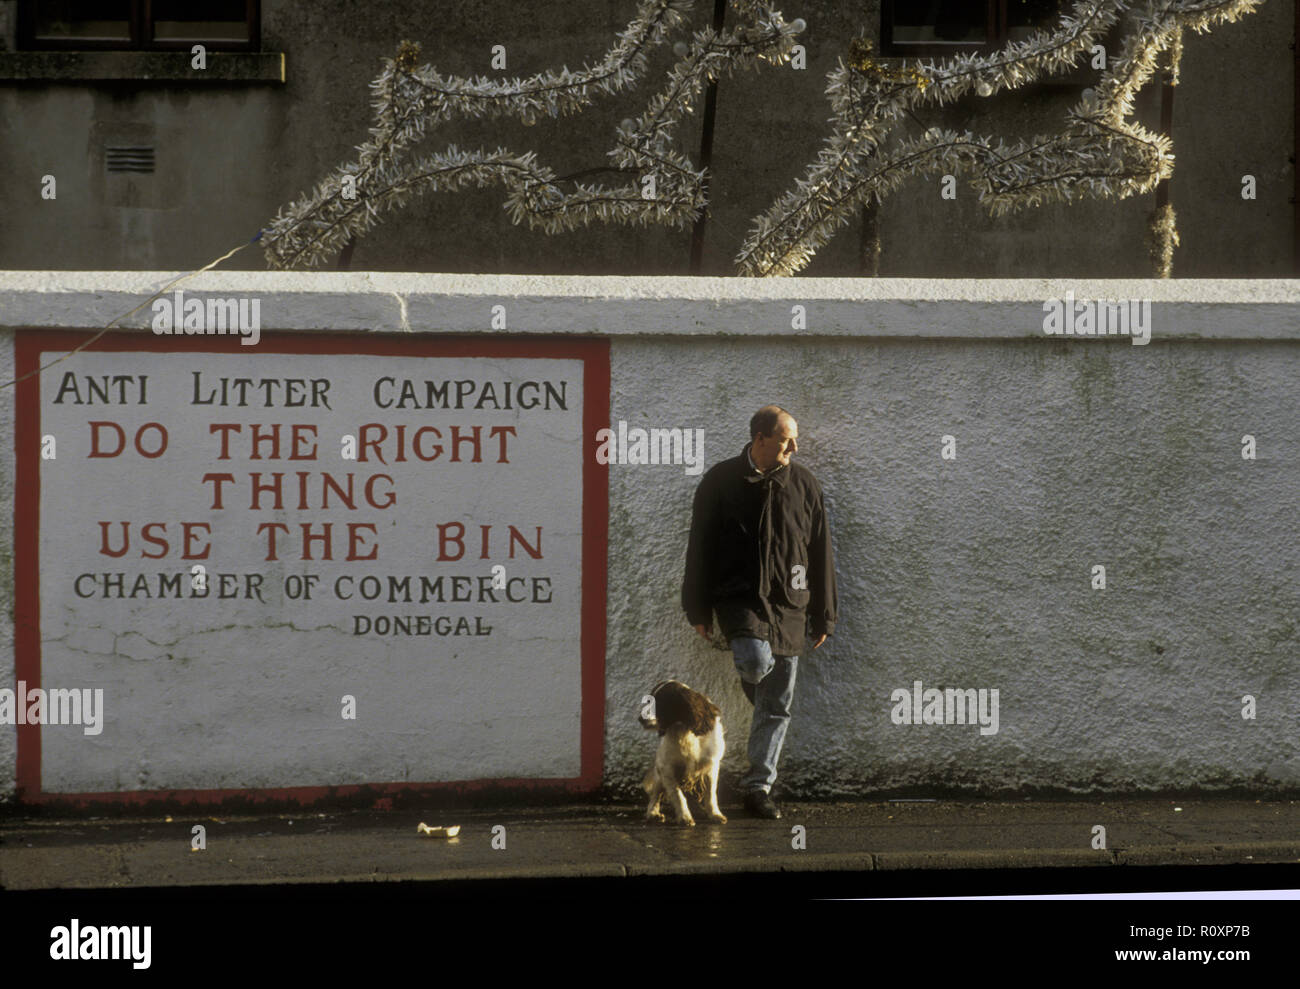 Un homme se tient immobile et se penche sur un mur à côté d'un panneau de campagne anti-litière. Son chien spaniel est assis à ses côtés. Au-dessus d'eux sont des décorations de Noël. Donegal, Irlande Banque D'Images